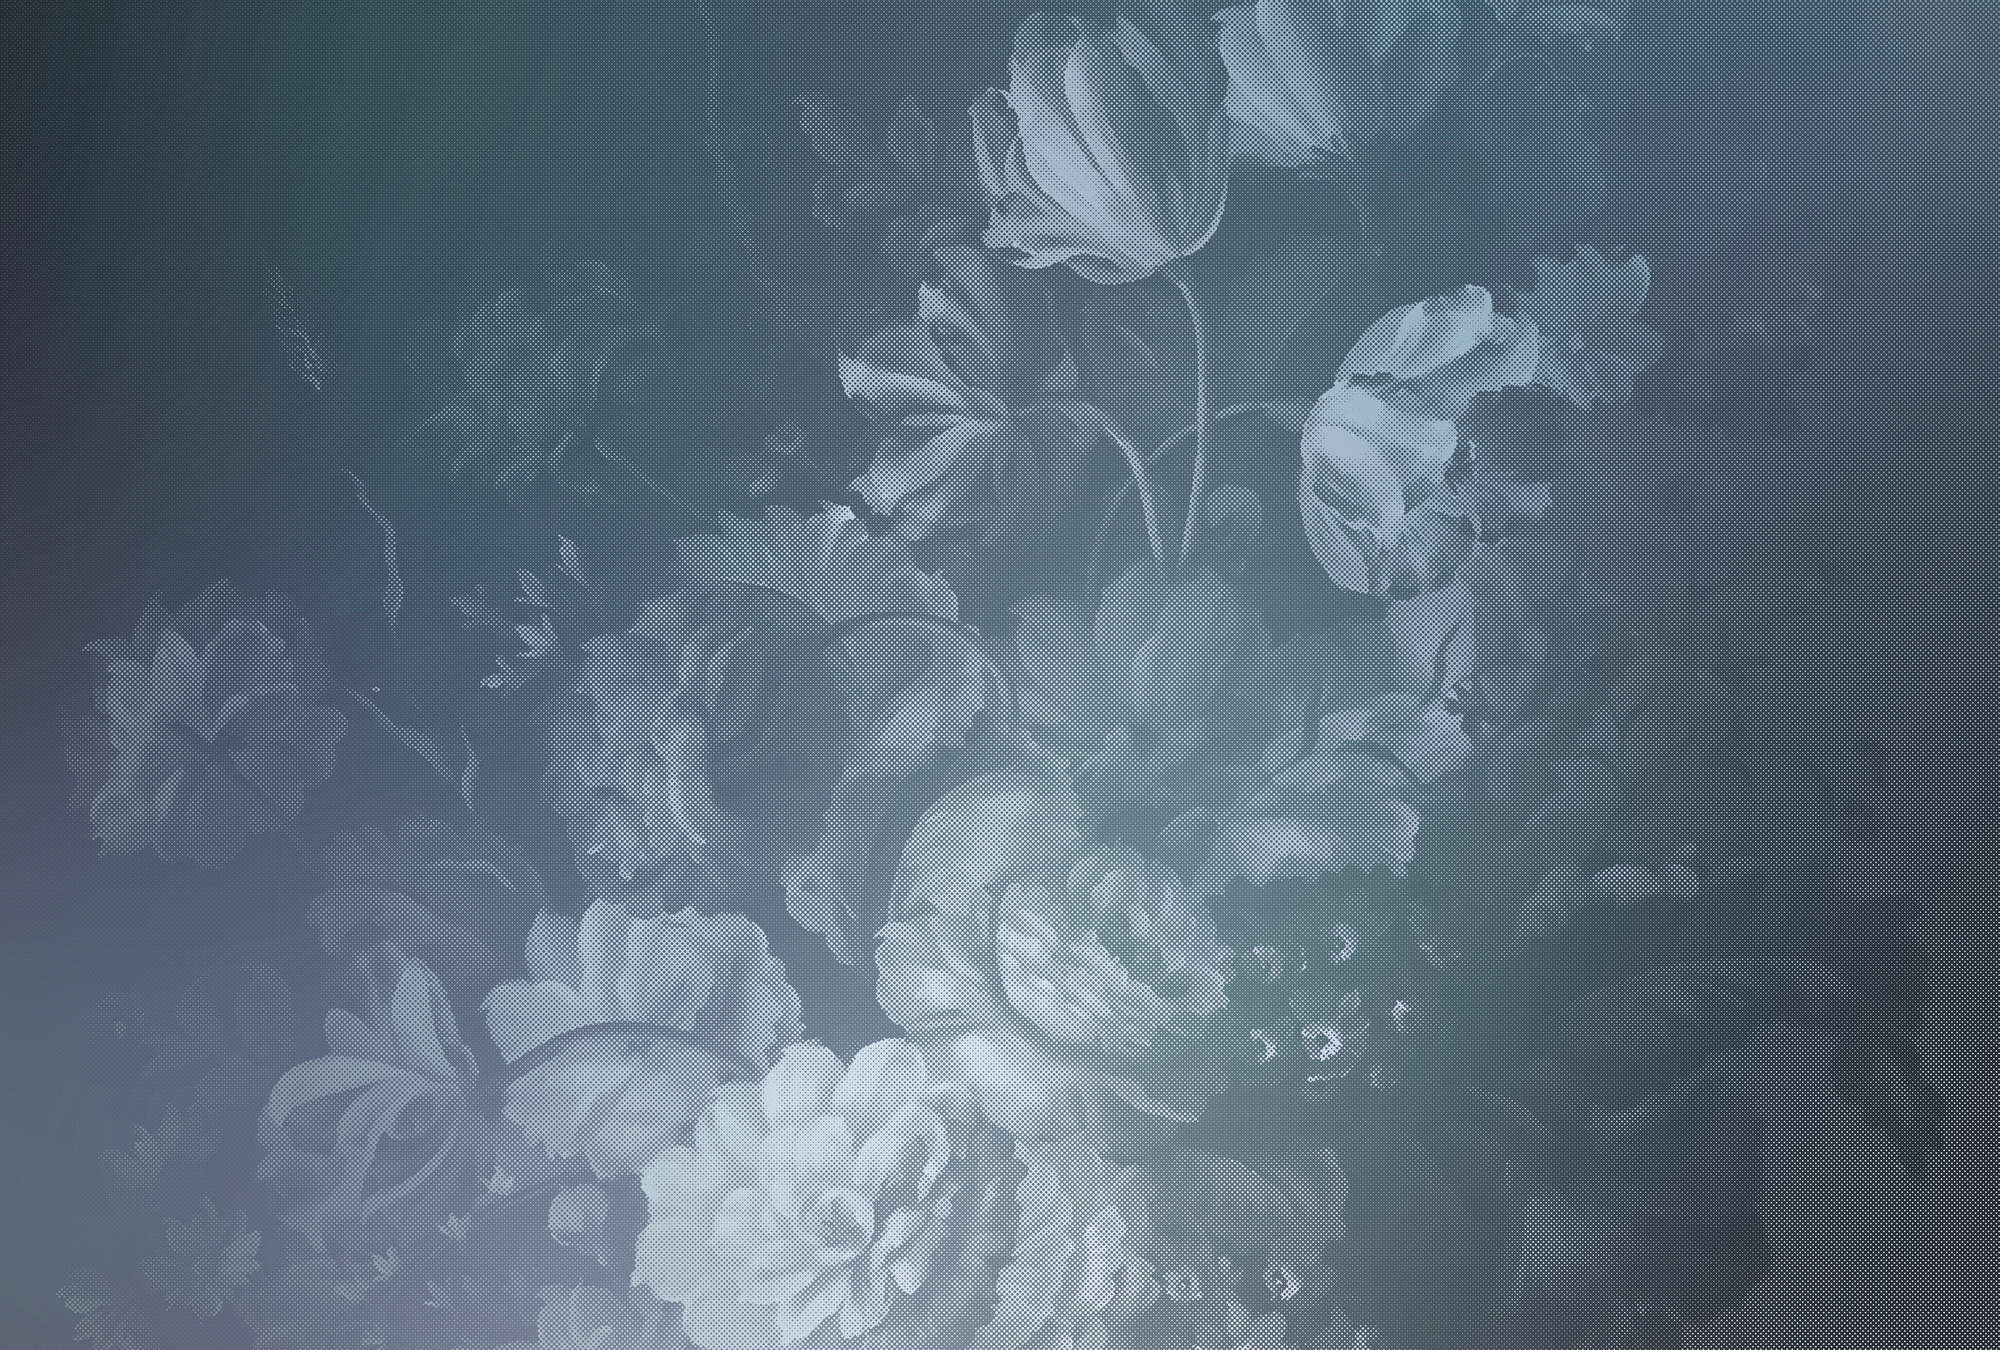             Pastello olandese 1 - Fotomurali con motivo di rose artistiche - Blu | Panno liscio opaco
        